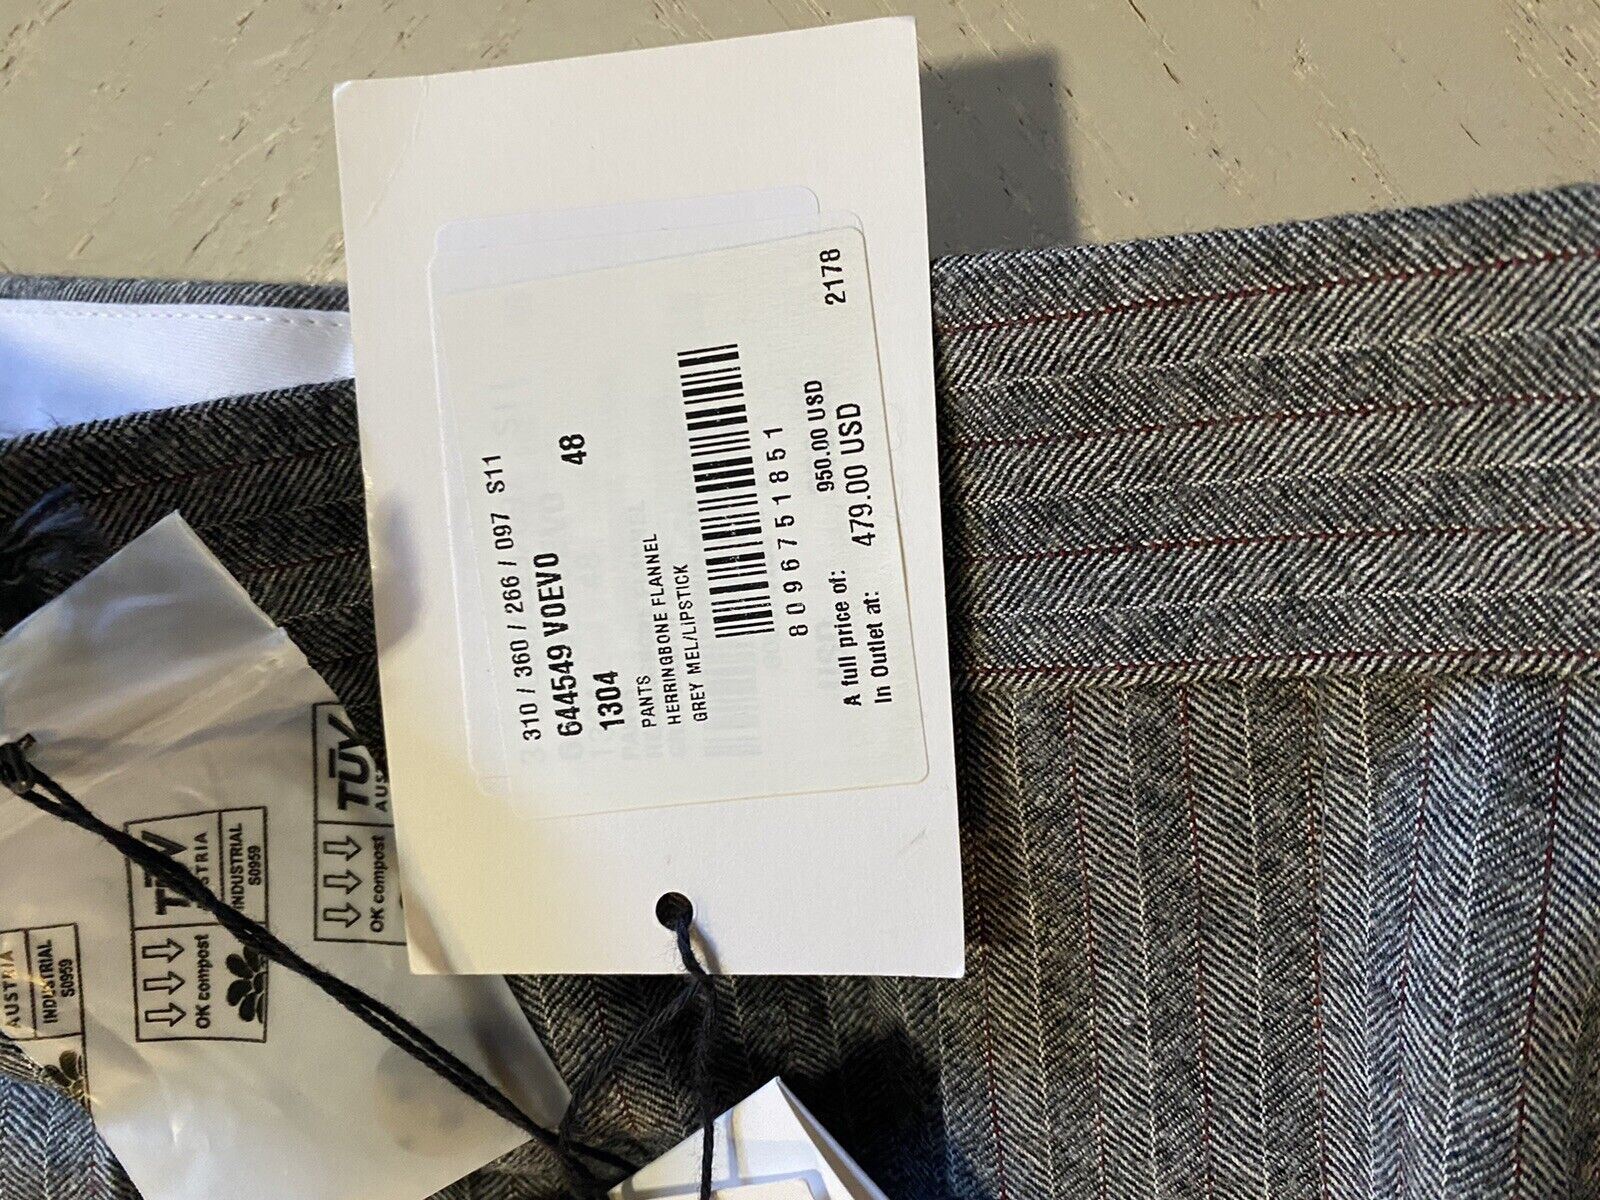 СЗТ $950 Мужские шерстяные классические брюки Bottega Veneta серые 32 США/48 ЕС